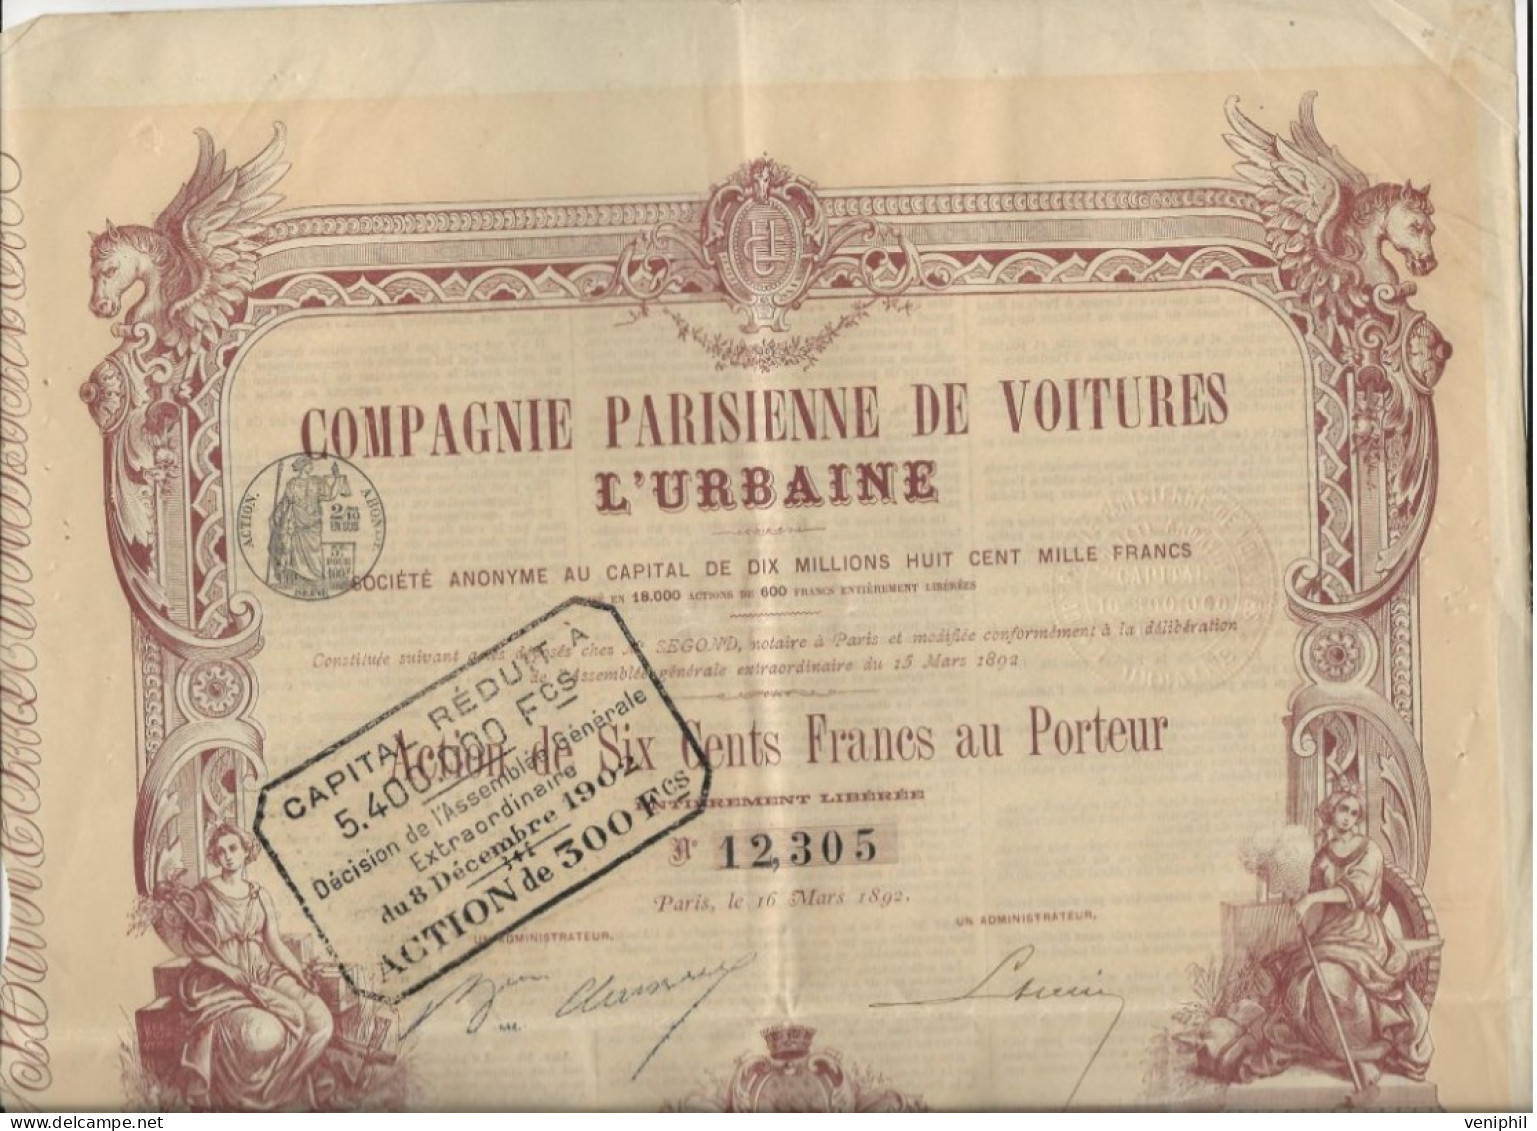 COMPAGNIE PARISIENNE DE VOITURES L- ACTION ILLUSTREE DE SIX CENTS FRANCS - ANNEE 1892 - Automobile